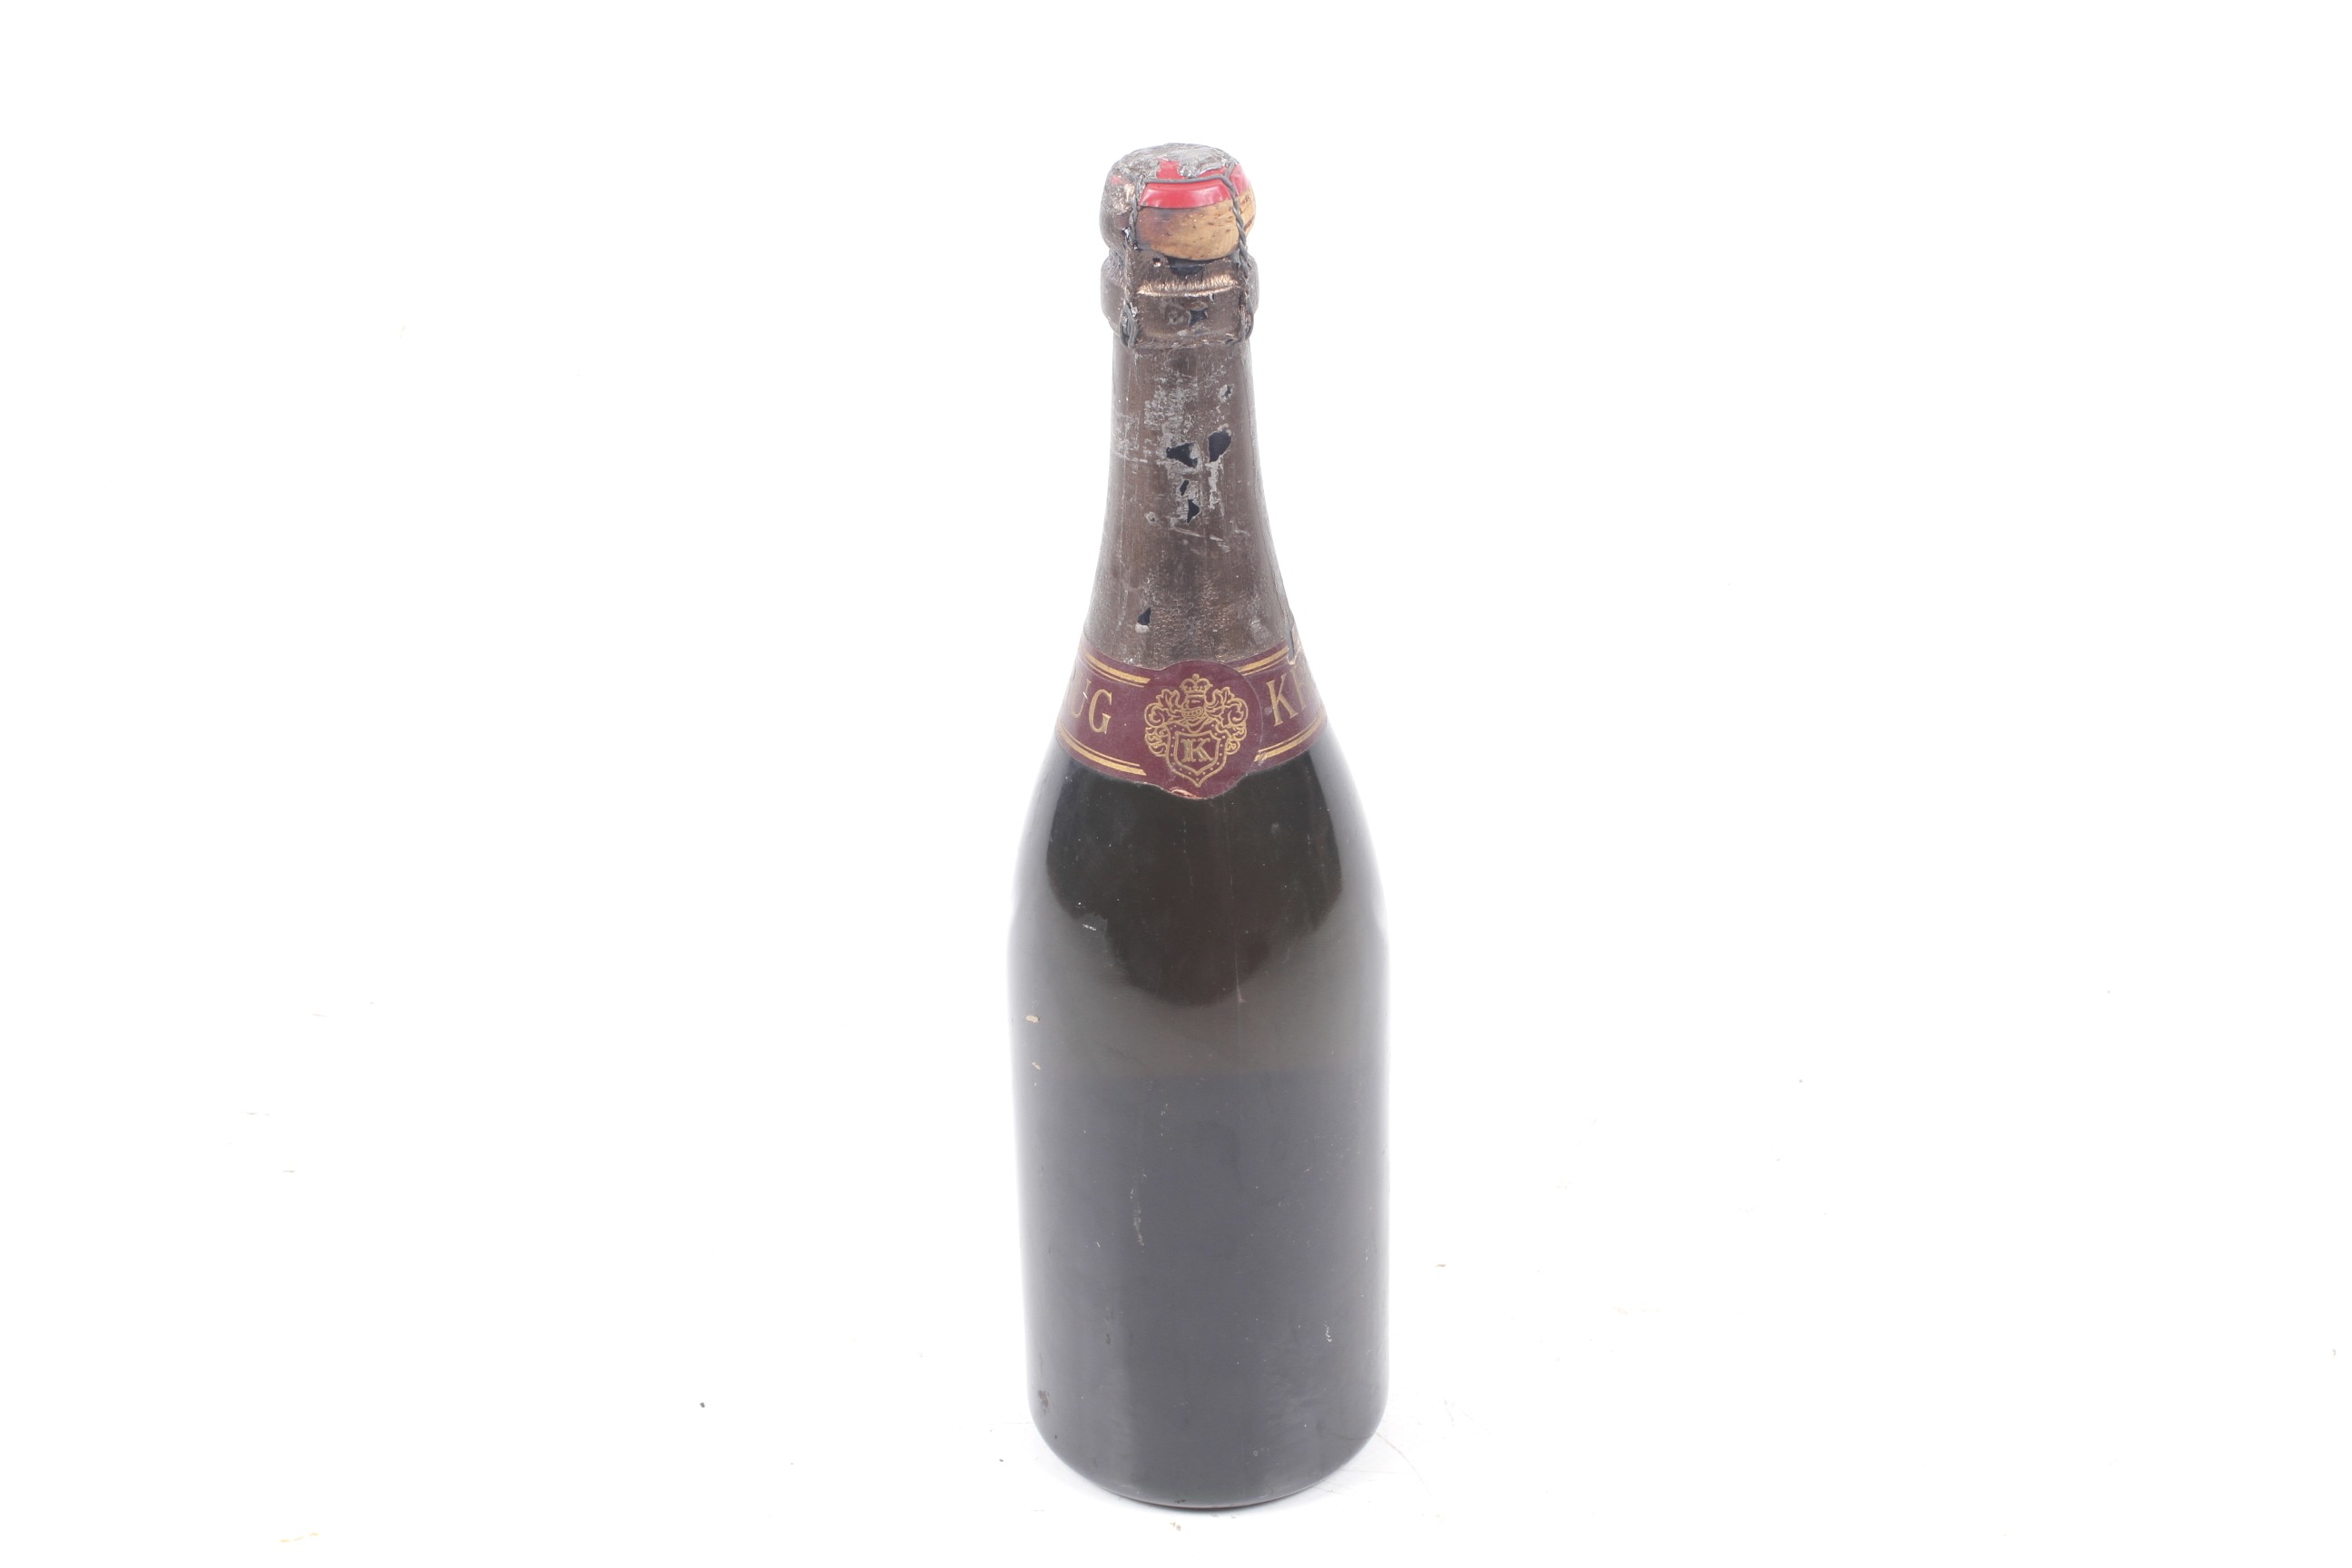 A bottle of Krug Reims Champagne 1966 vintage. - Image 2 of 4